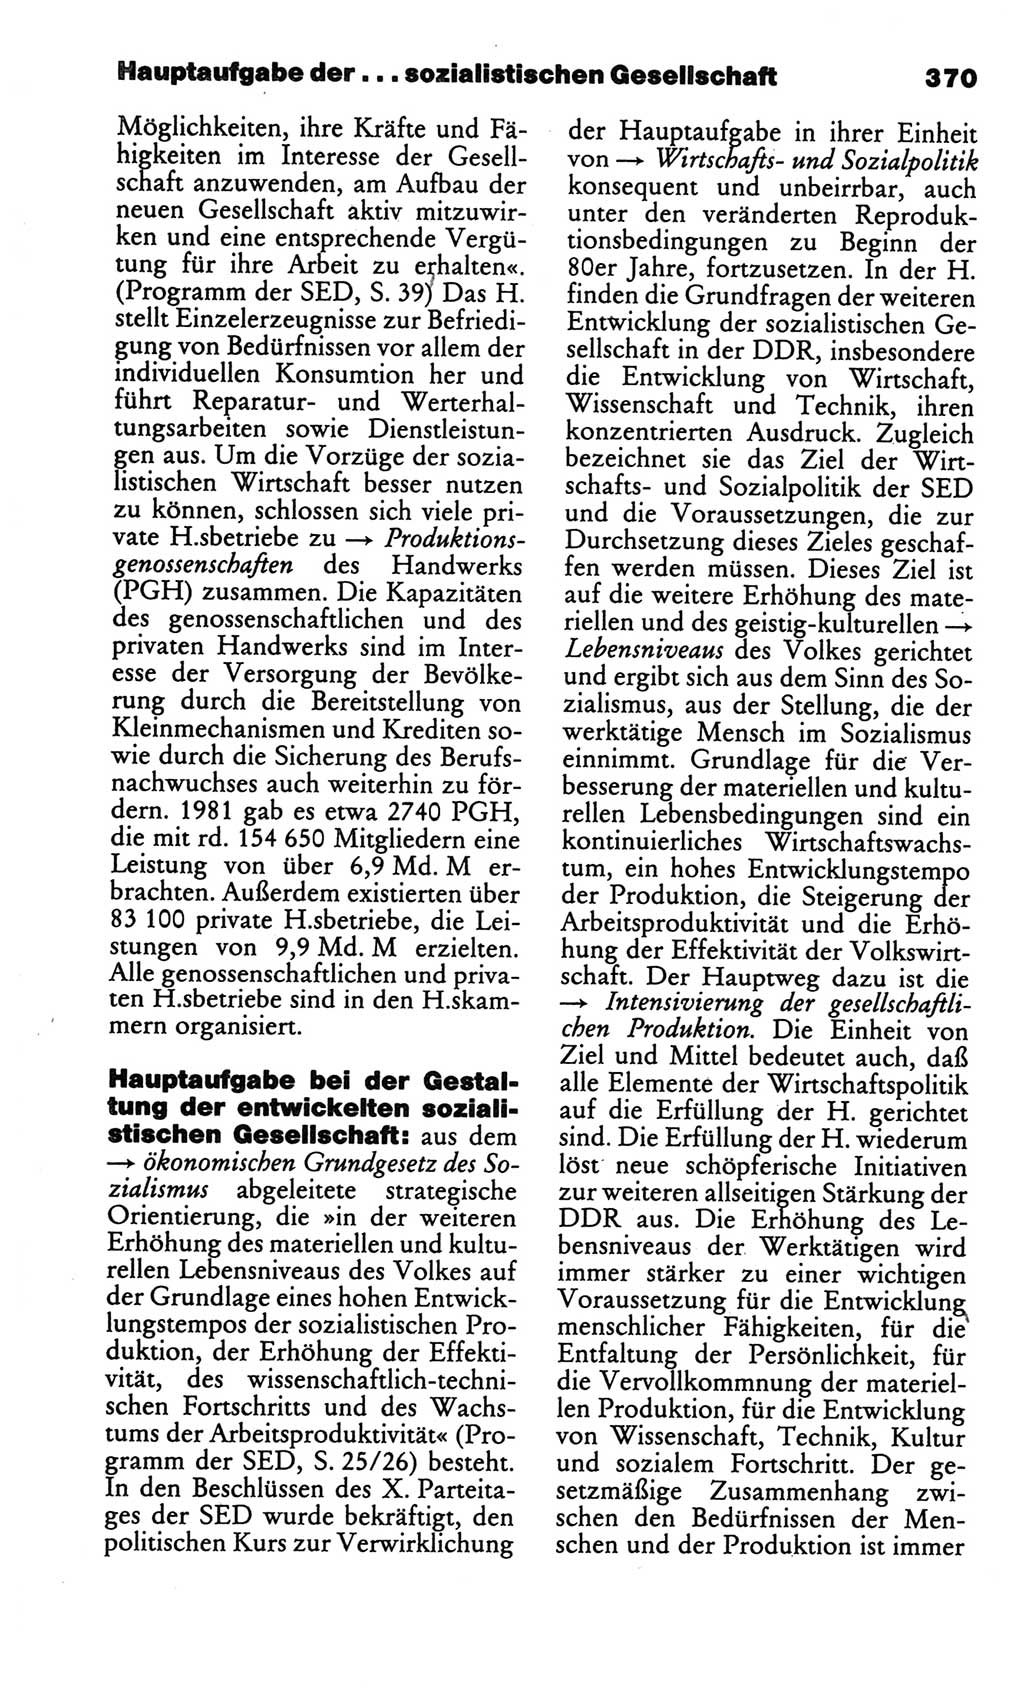 Kleines politisches Wörterbuch [Deutsche Demokratische Republik (DDR)] 1986, Seite 370 (Kl. pol. Wb. DDR 1986, S. 370)